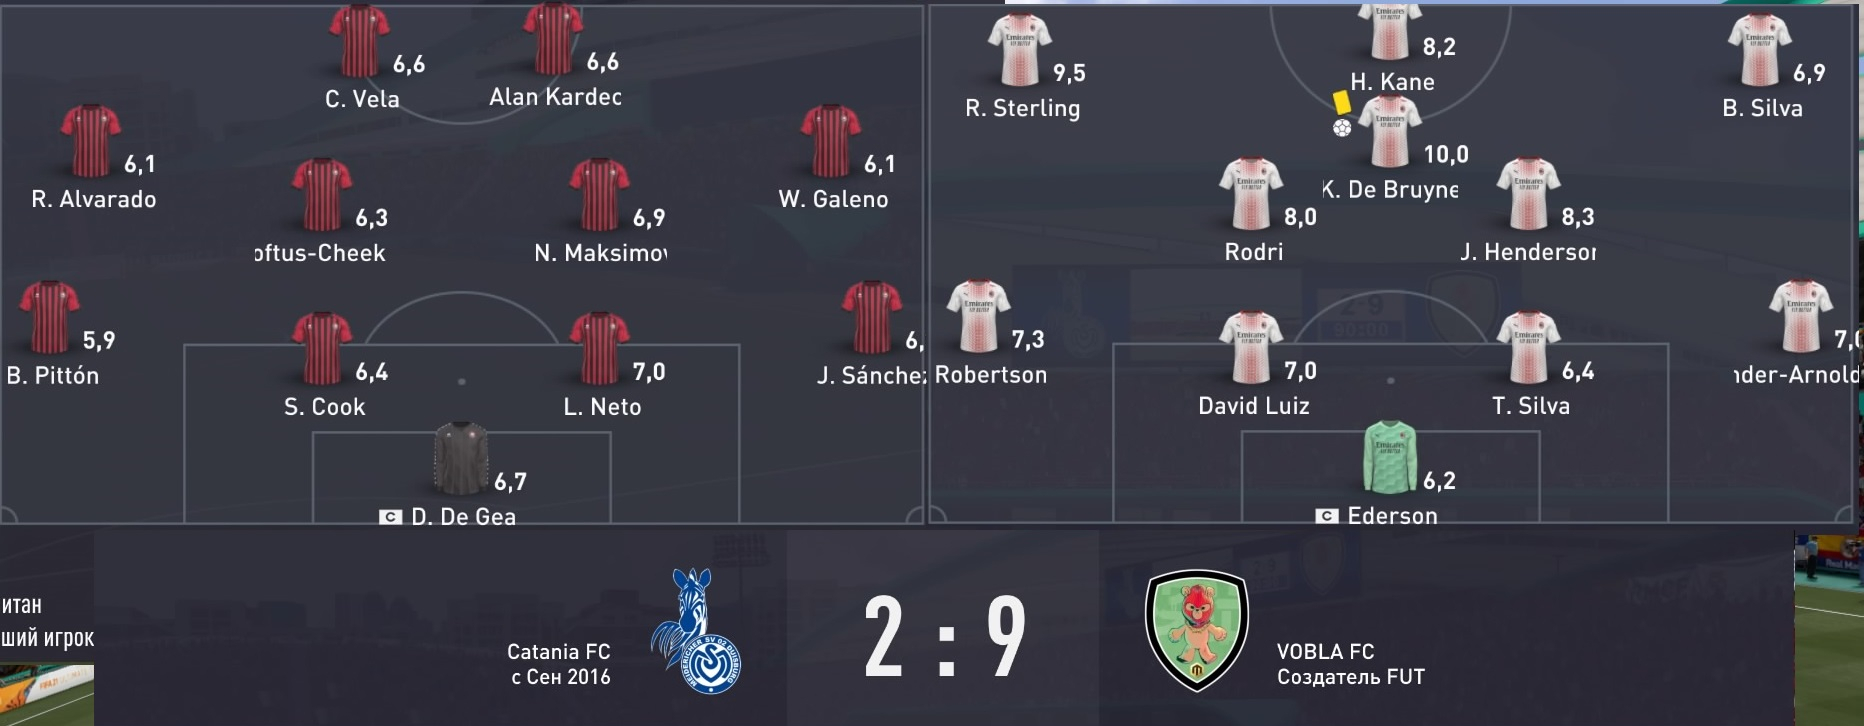 Скриншот из игры FIFA 21 под номером 8